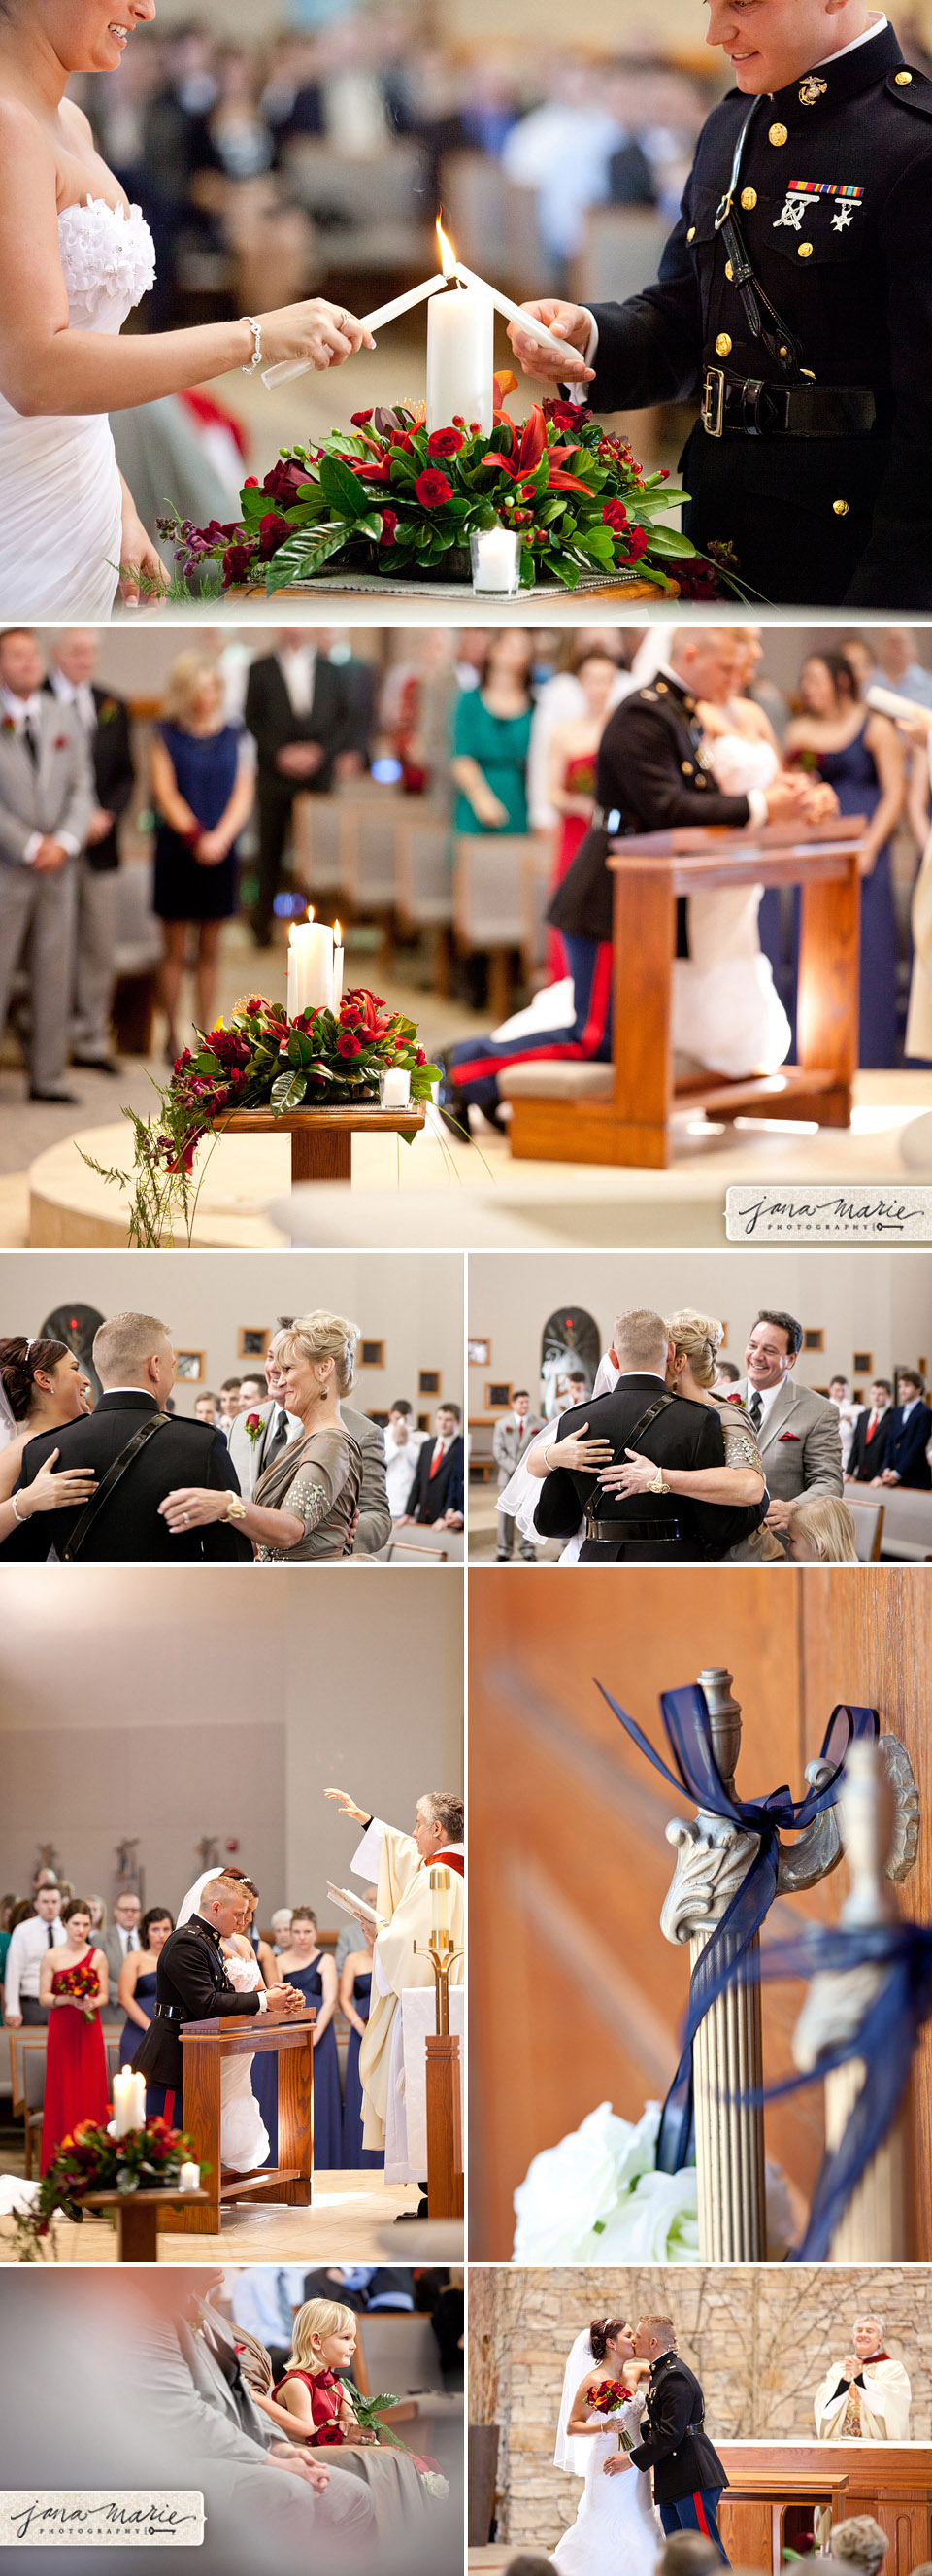 Catholic weddings, Independence ceremony, St Marks Catholic Church, hugs, details, flowers